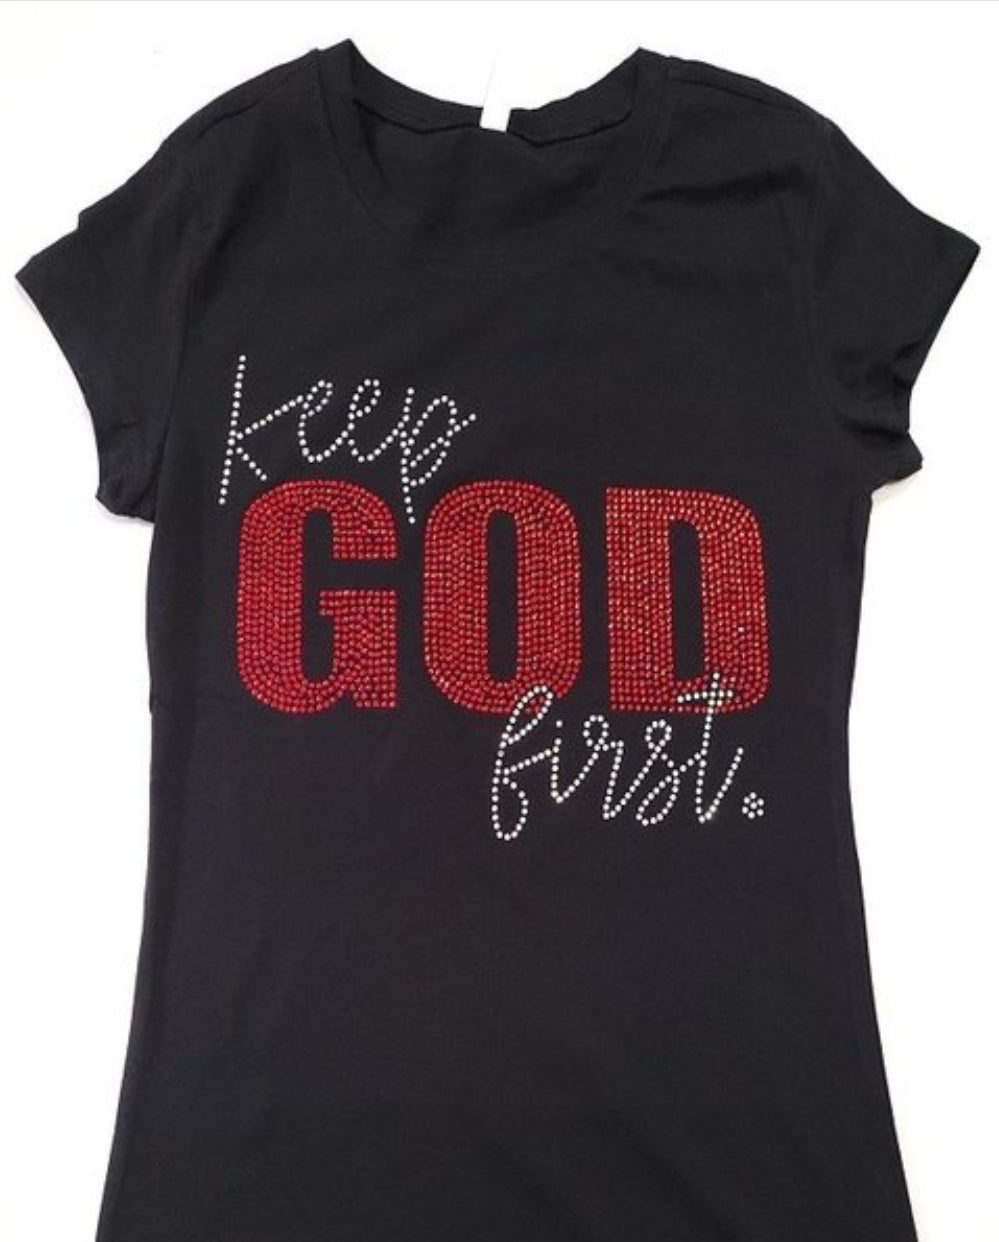 Keep God First (Bling Shirt)